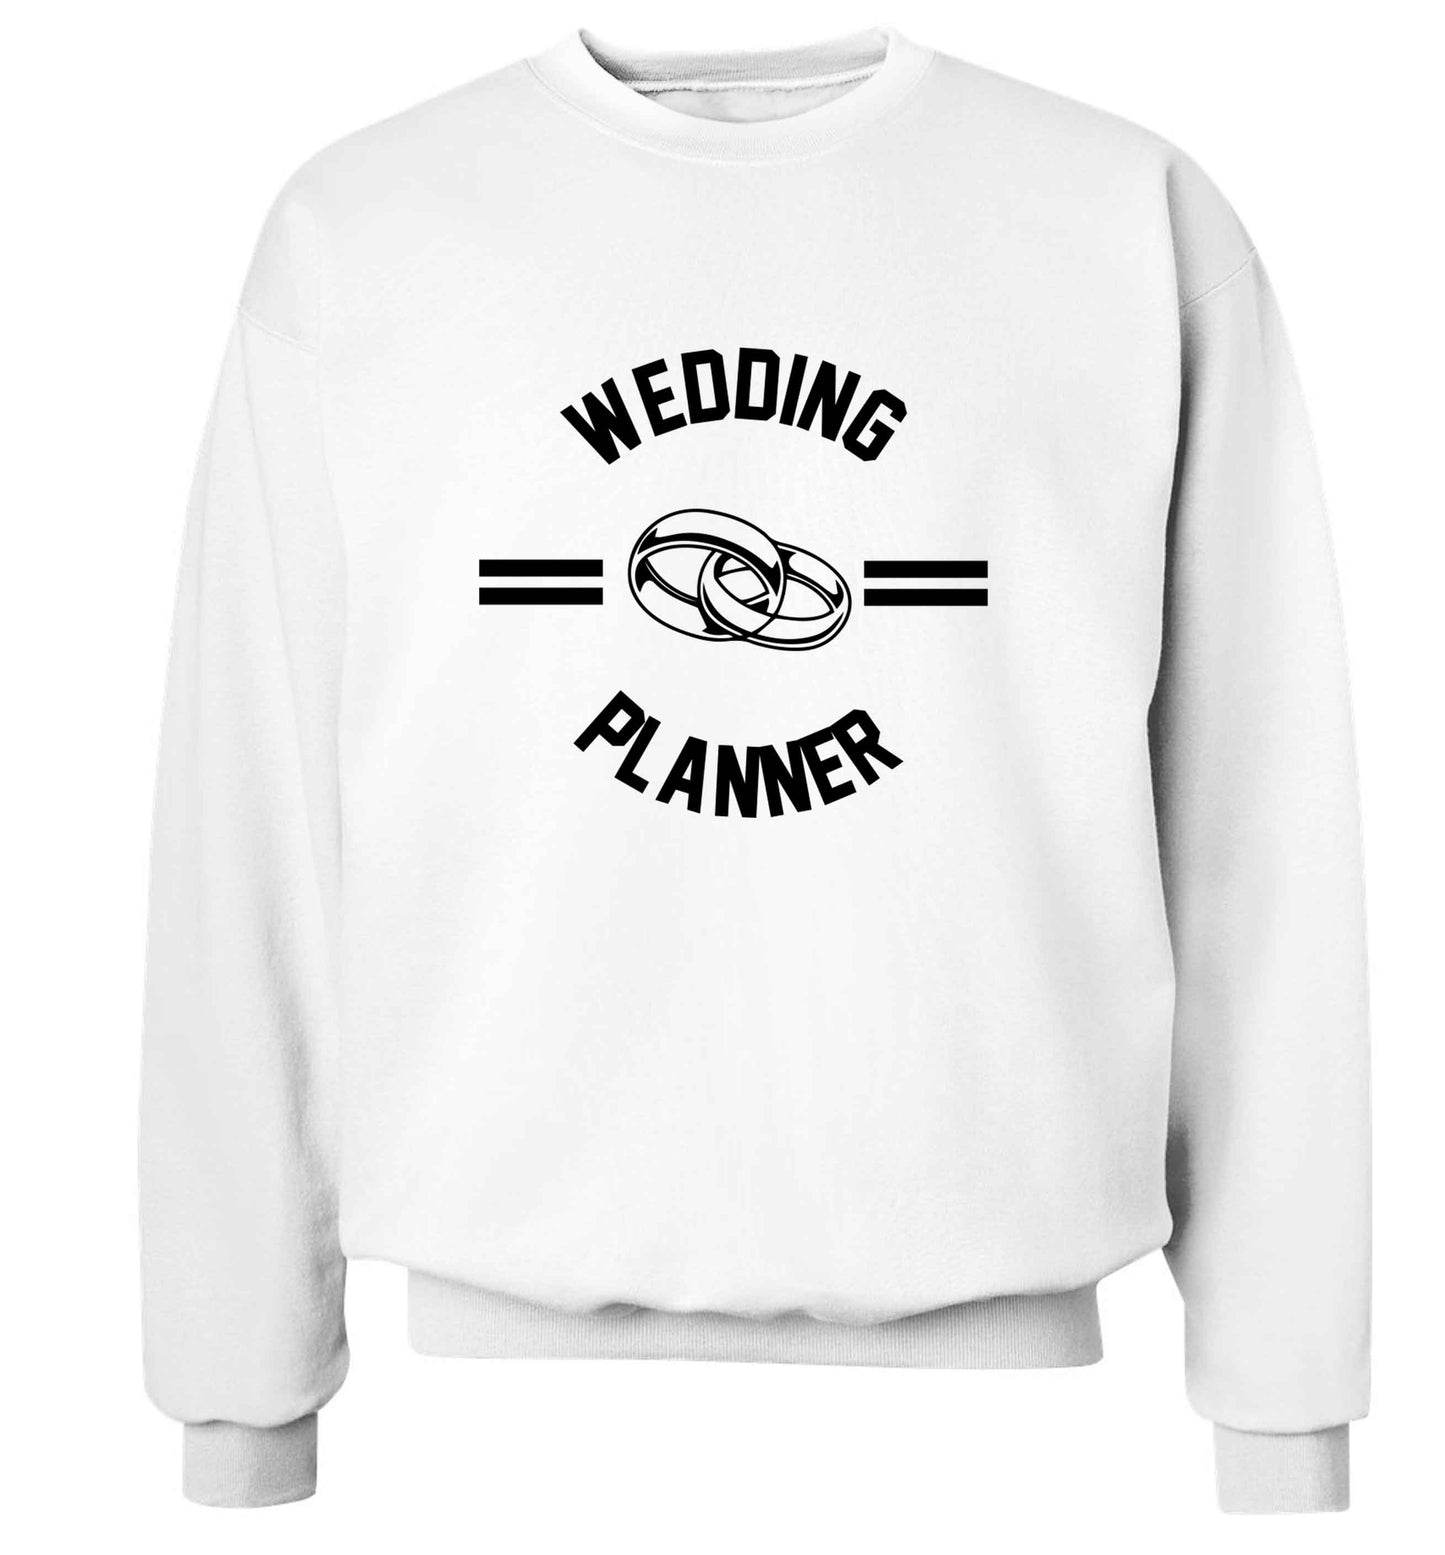 Wedding planner adult's unisex white sweater 2XL